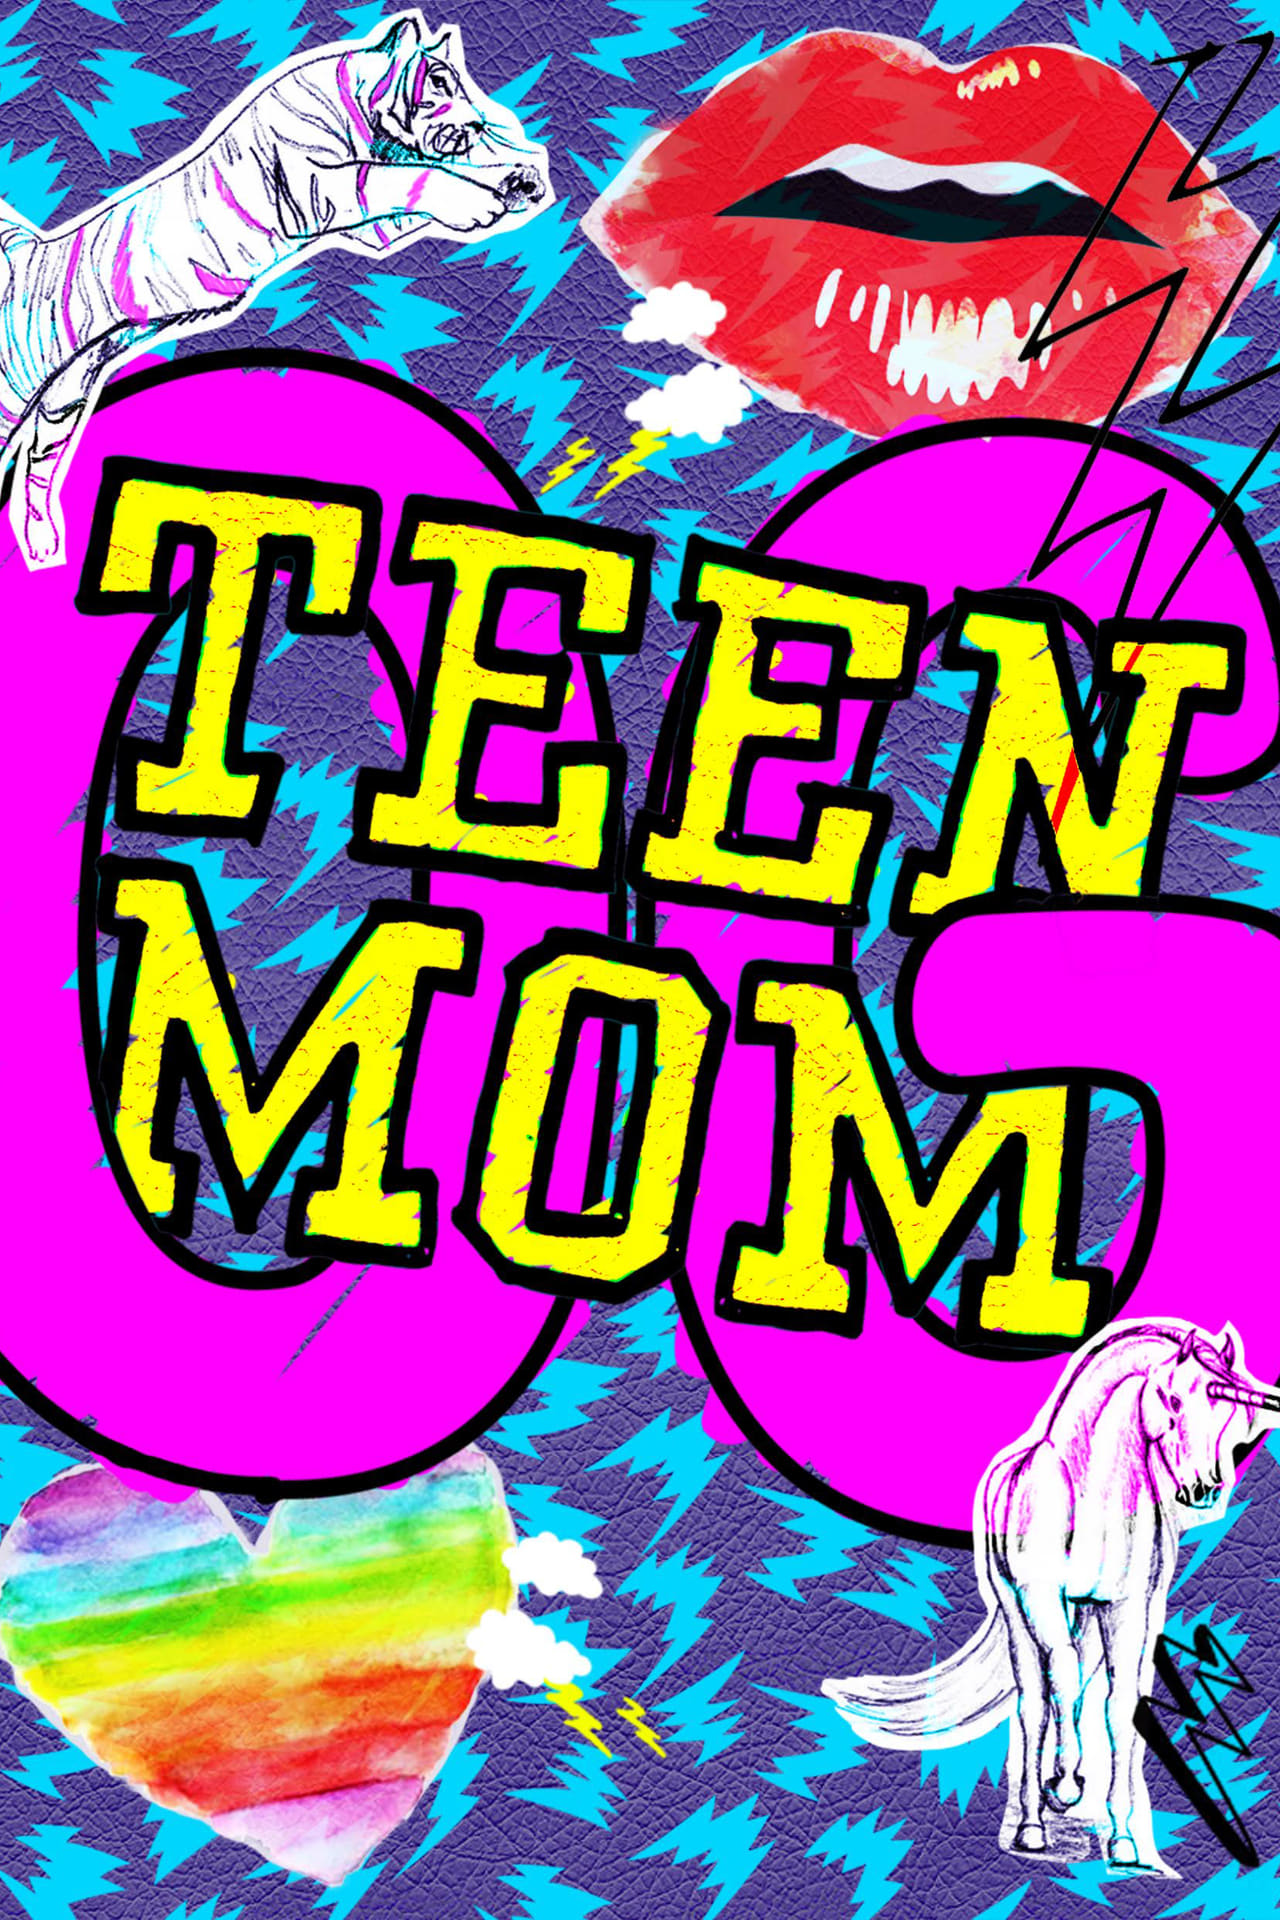 Teen Mom Season 3